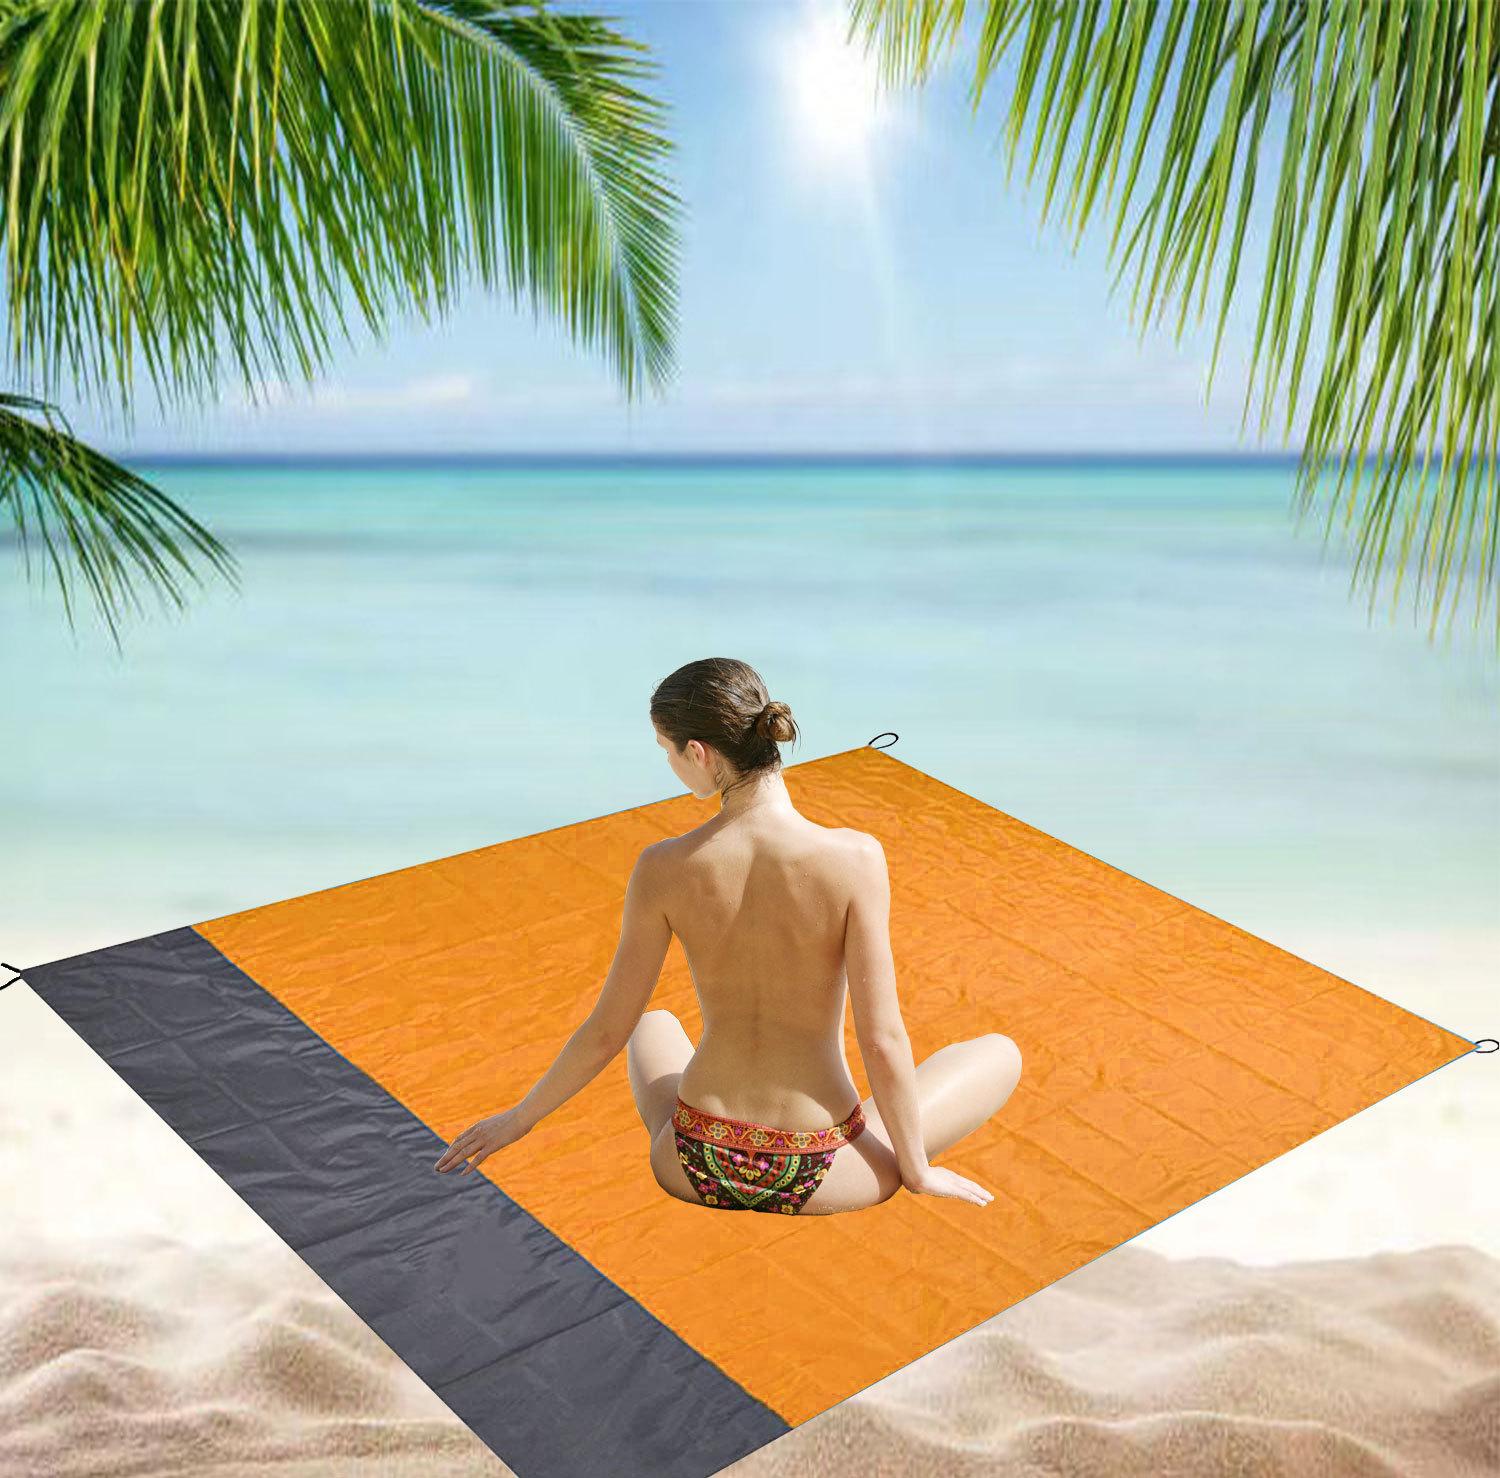 Waterproof beach blanket 200*210 cm - orange